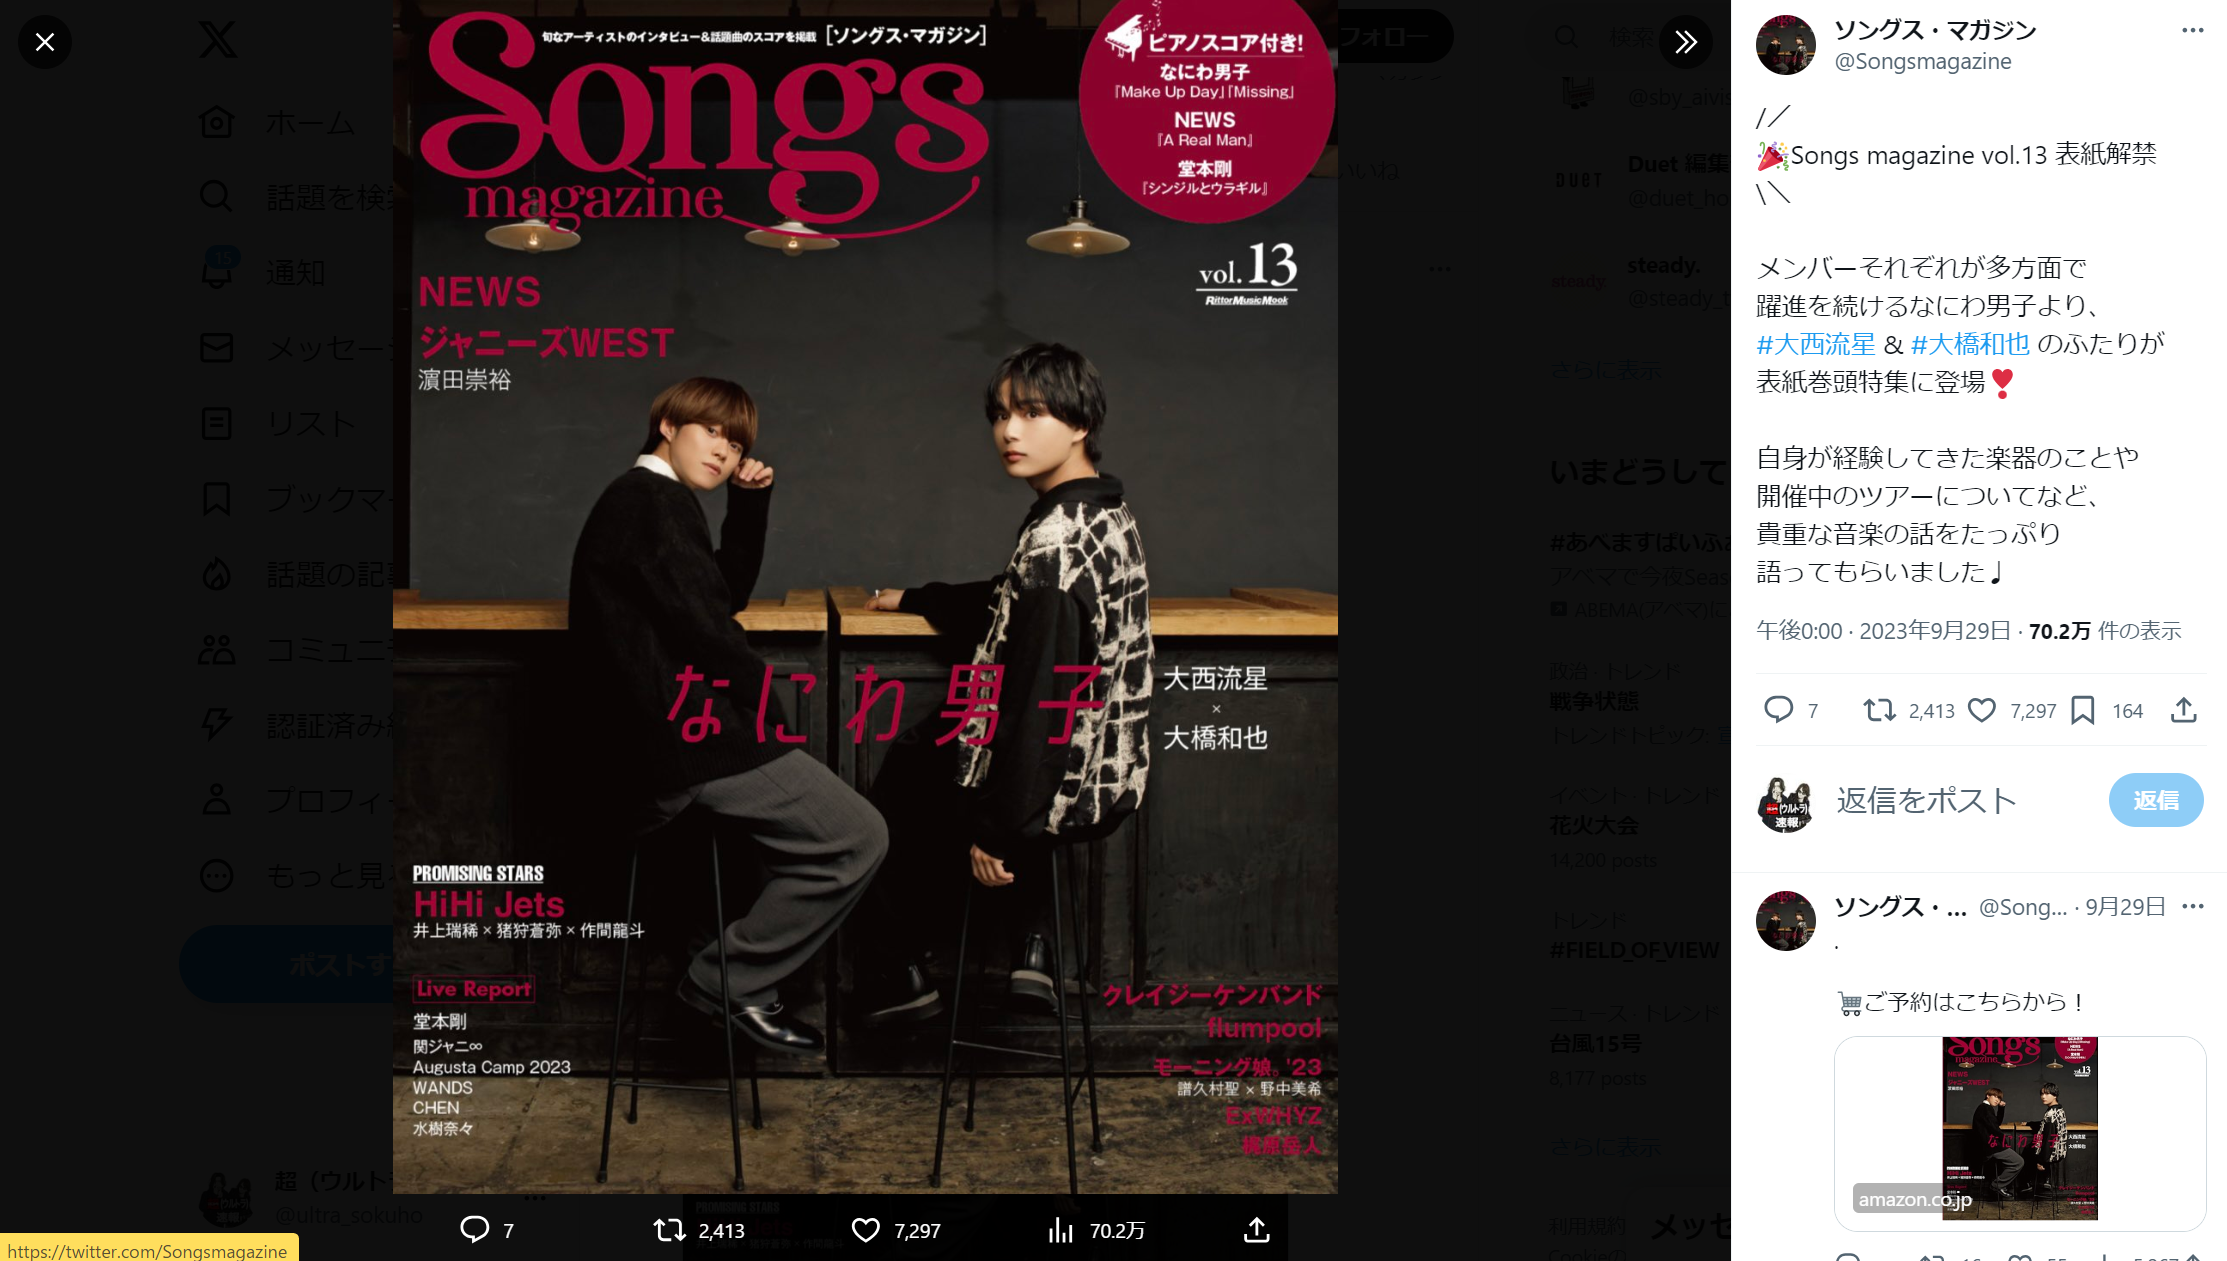 Xに投稿された「Songs magazine (ソングス・マガジン) vol.13」の表紙画像